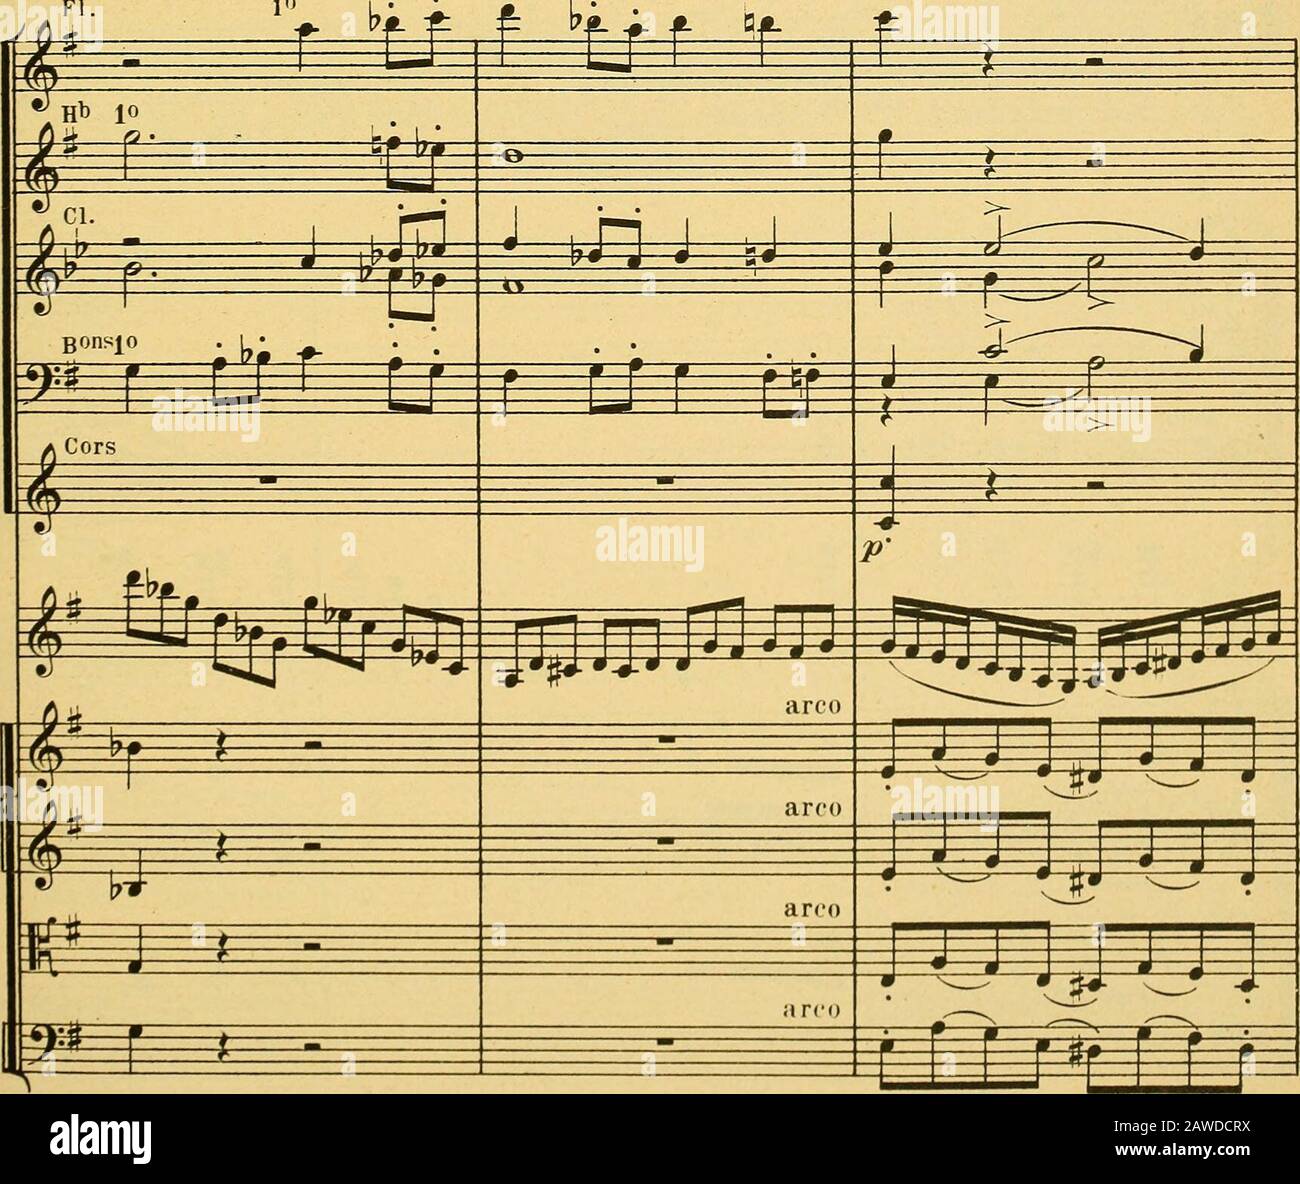 Morceau de concert : pour violon avec accompagnement d'orchestre ou de piano,  op62 . fi. :£: % 3i 4—& M ci. r=^ i i Bons^ fe^ ^ C fMr* ILfCTtfC f *^: =